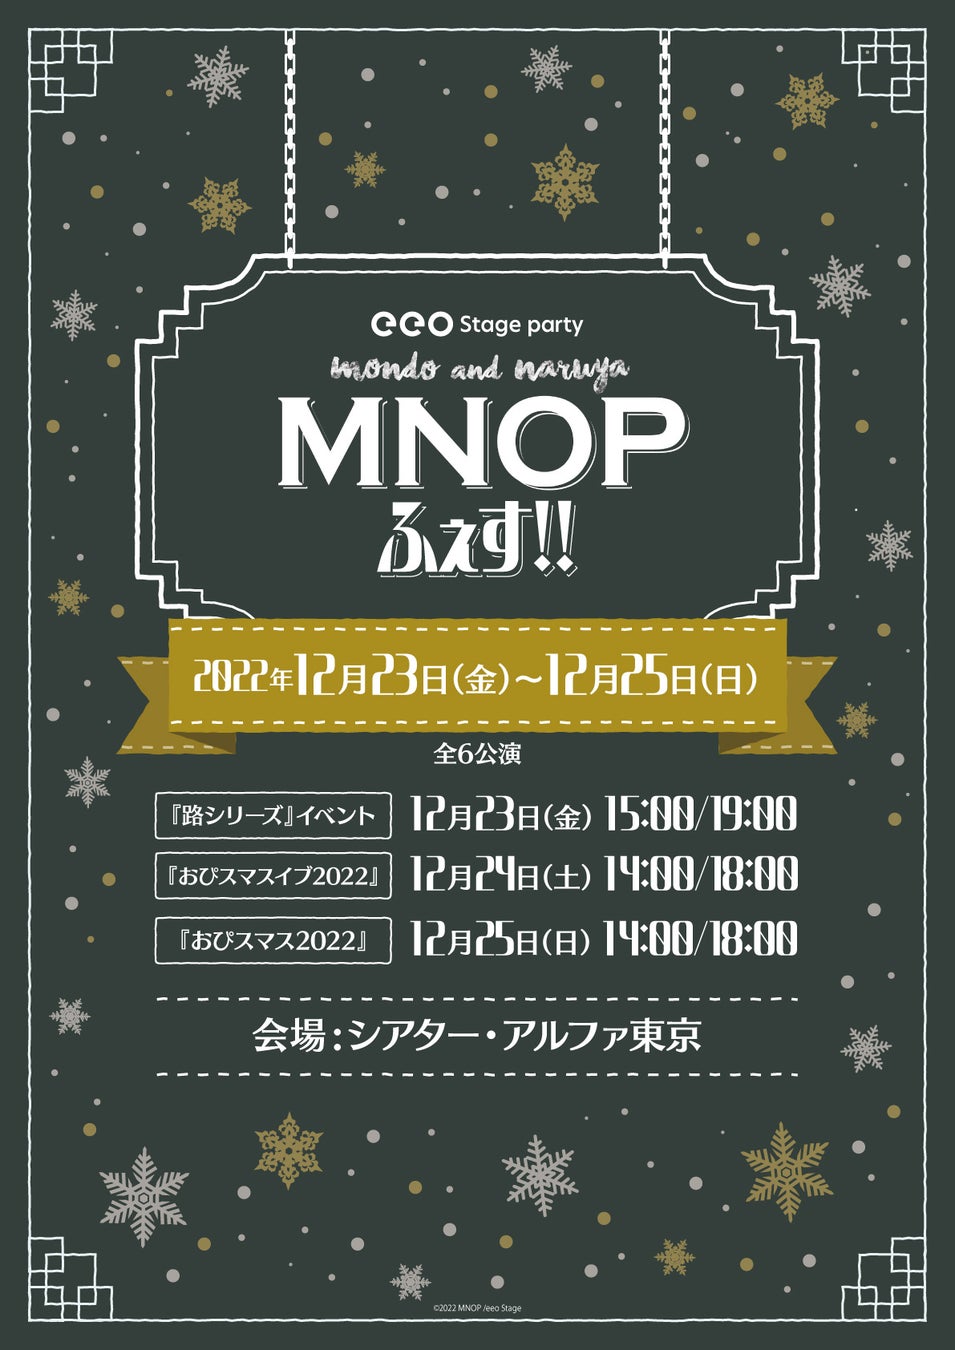 鵜飼主水＆萩原成哉の「MNOP」によるクリスマスイベント「eeo Stage party『MNOPふぇす！！』」の開催が決定！